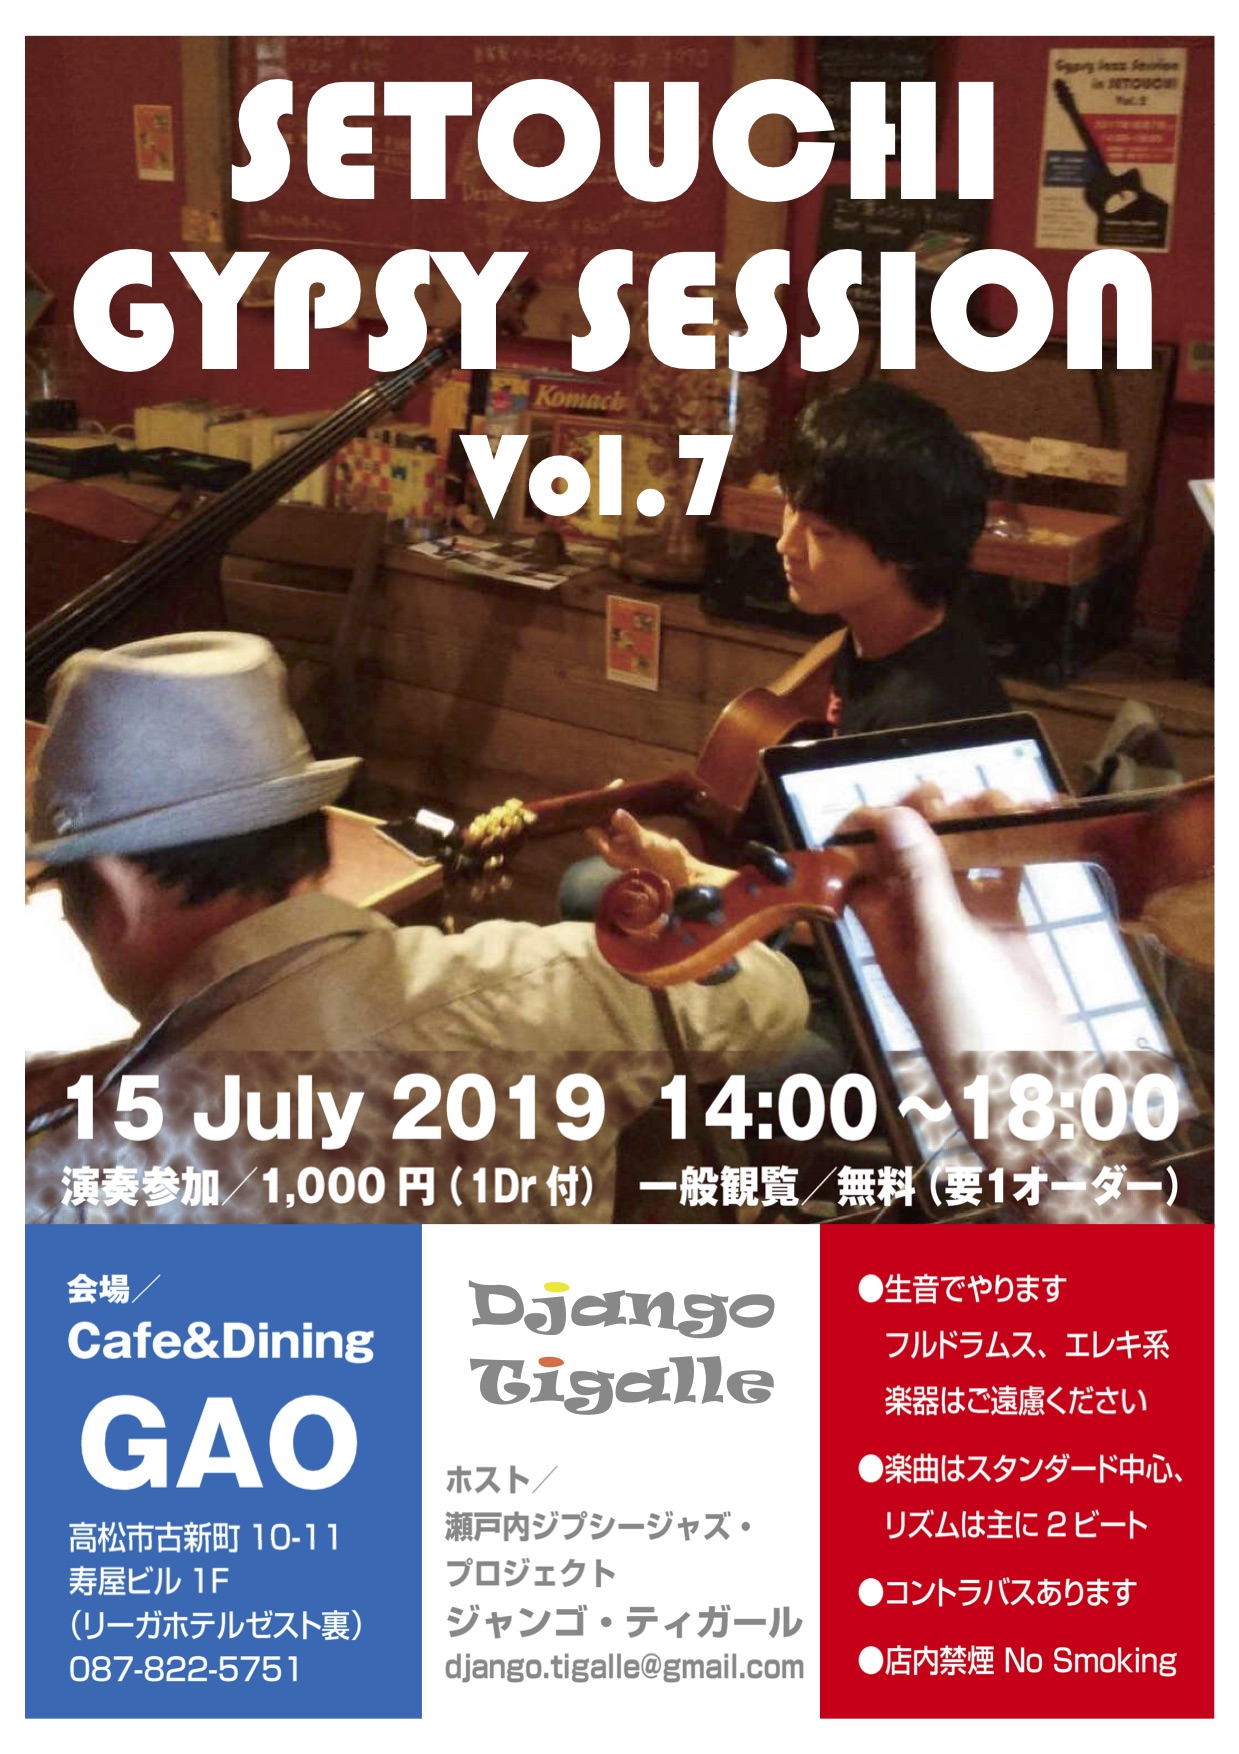 gypsy session